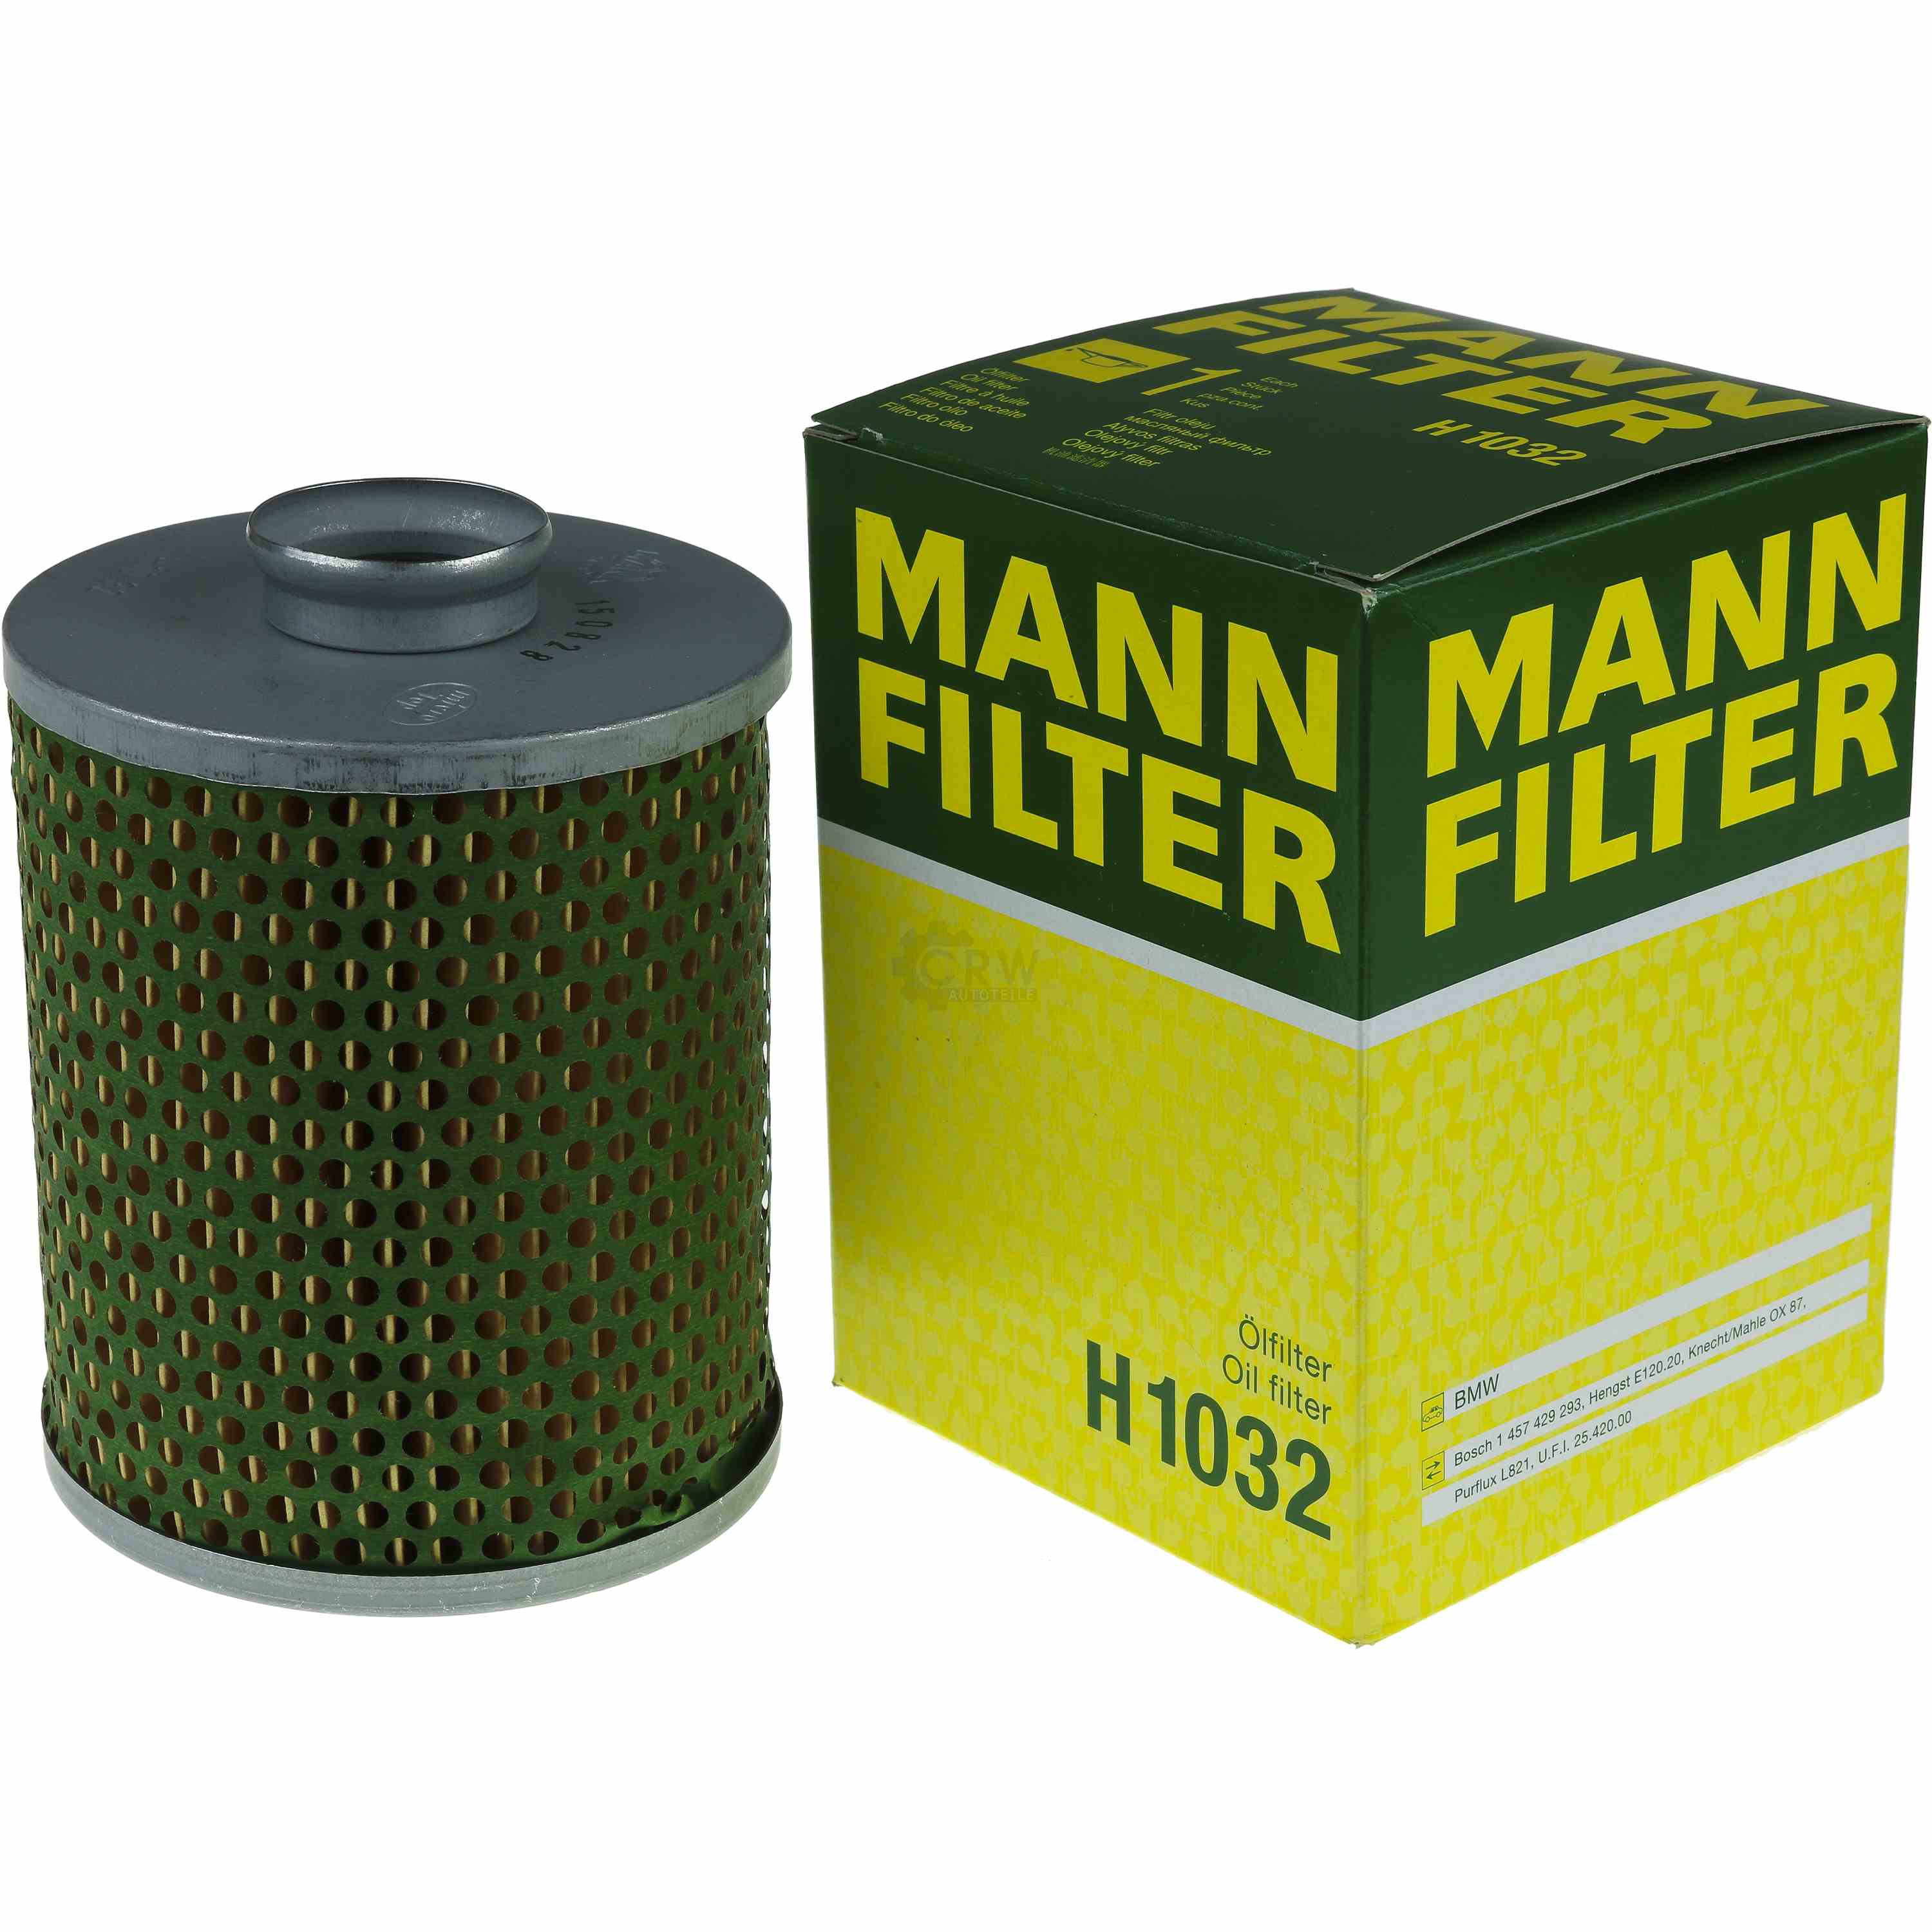 MANN-FILTER Ölfilter H 1032